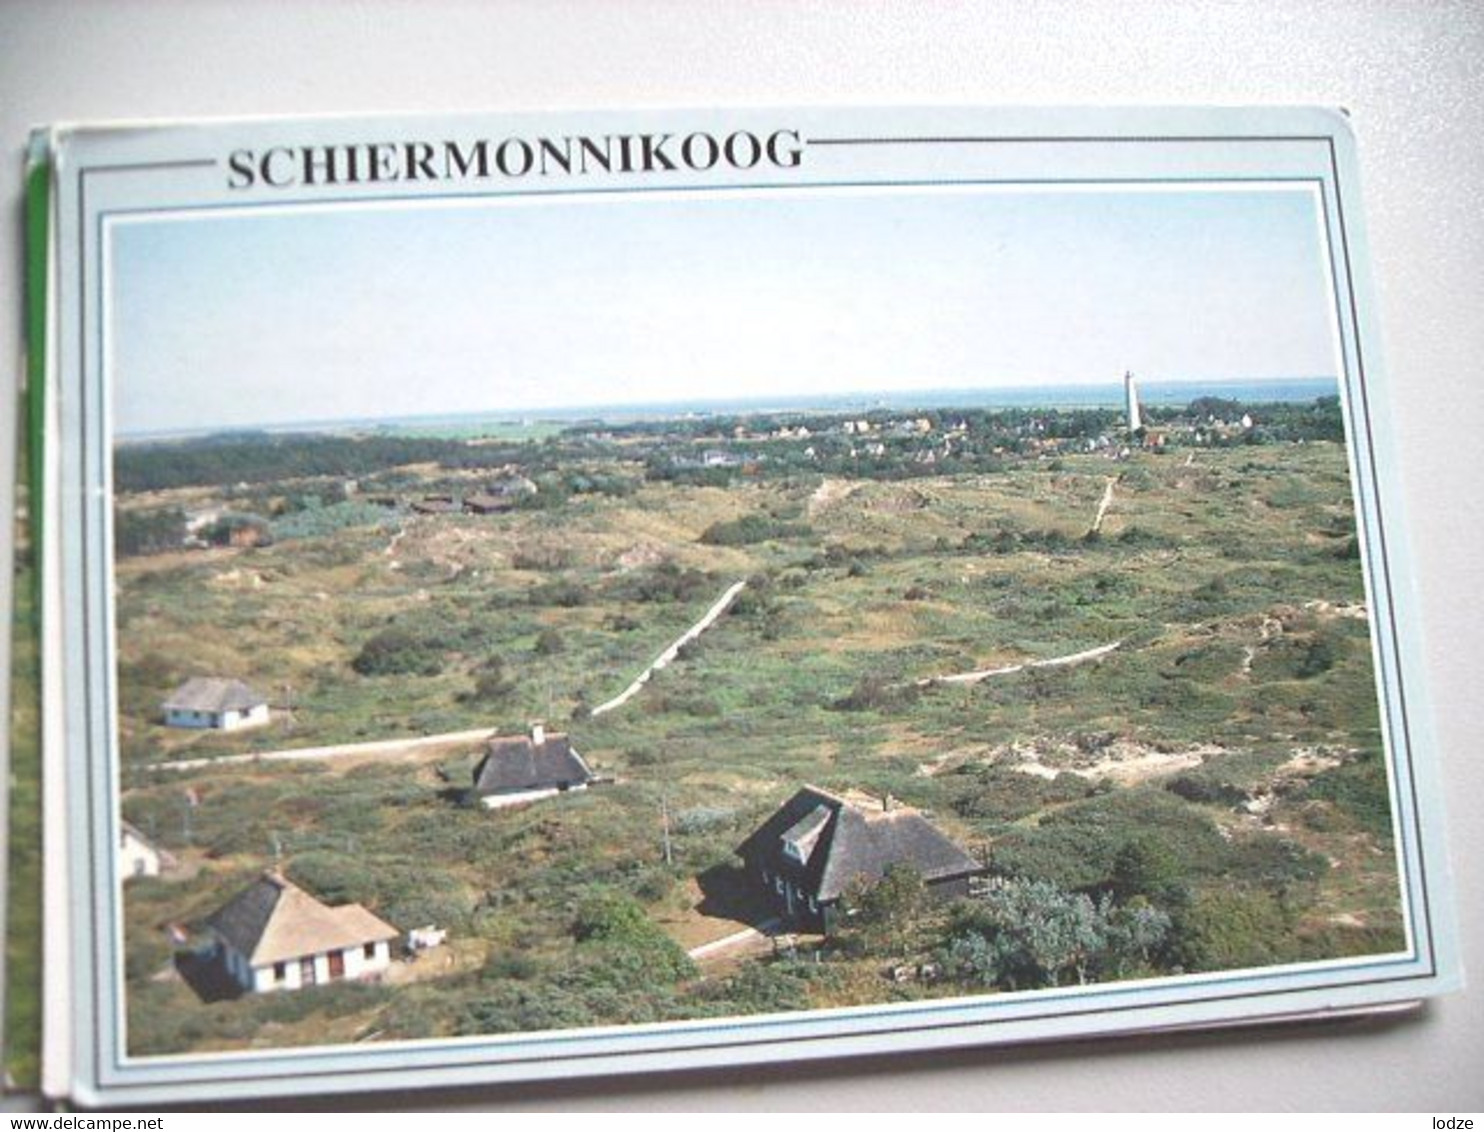 Nederland Holland Pays Bas Schiermonnikoog Met Huisjes In Duinen - Schiermonnikoog